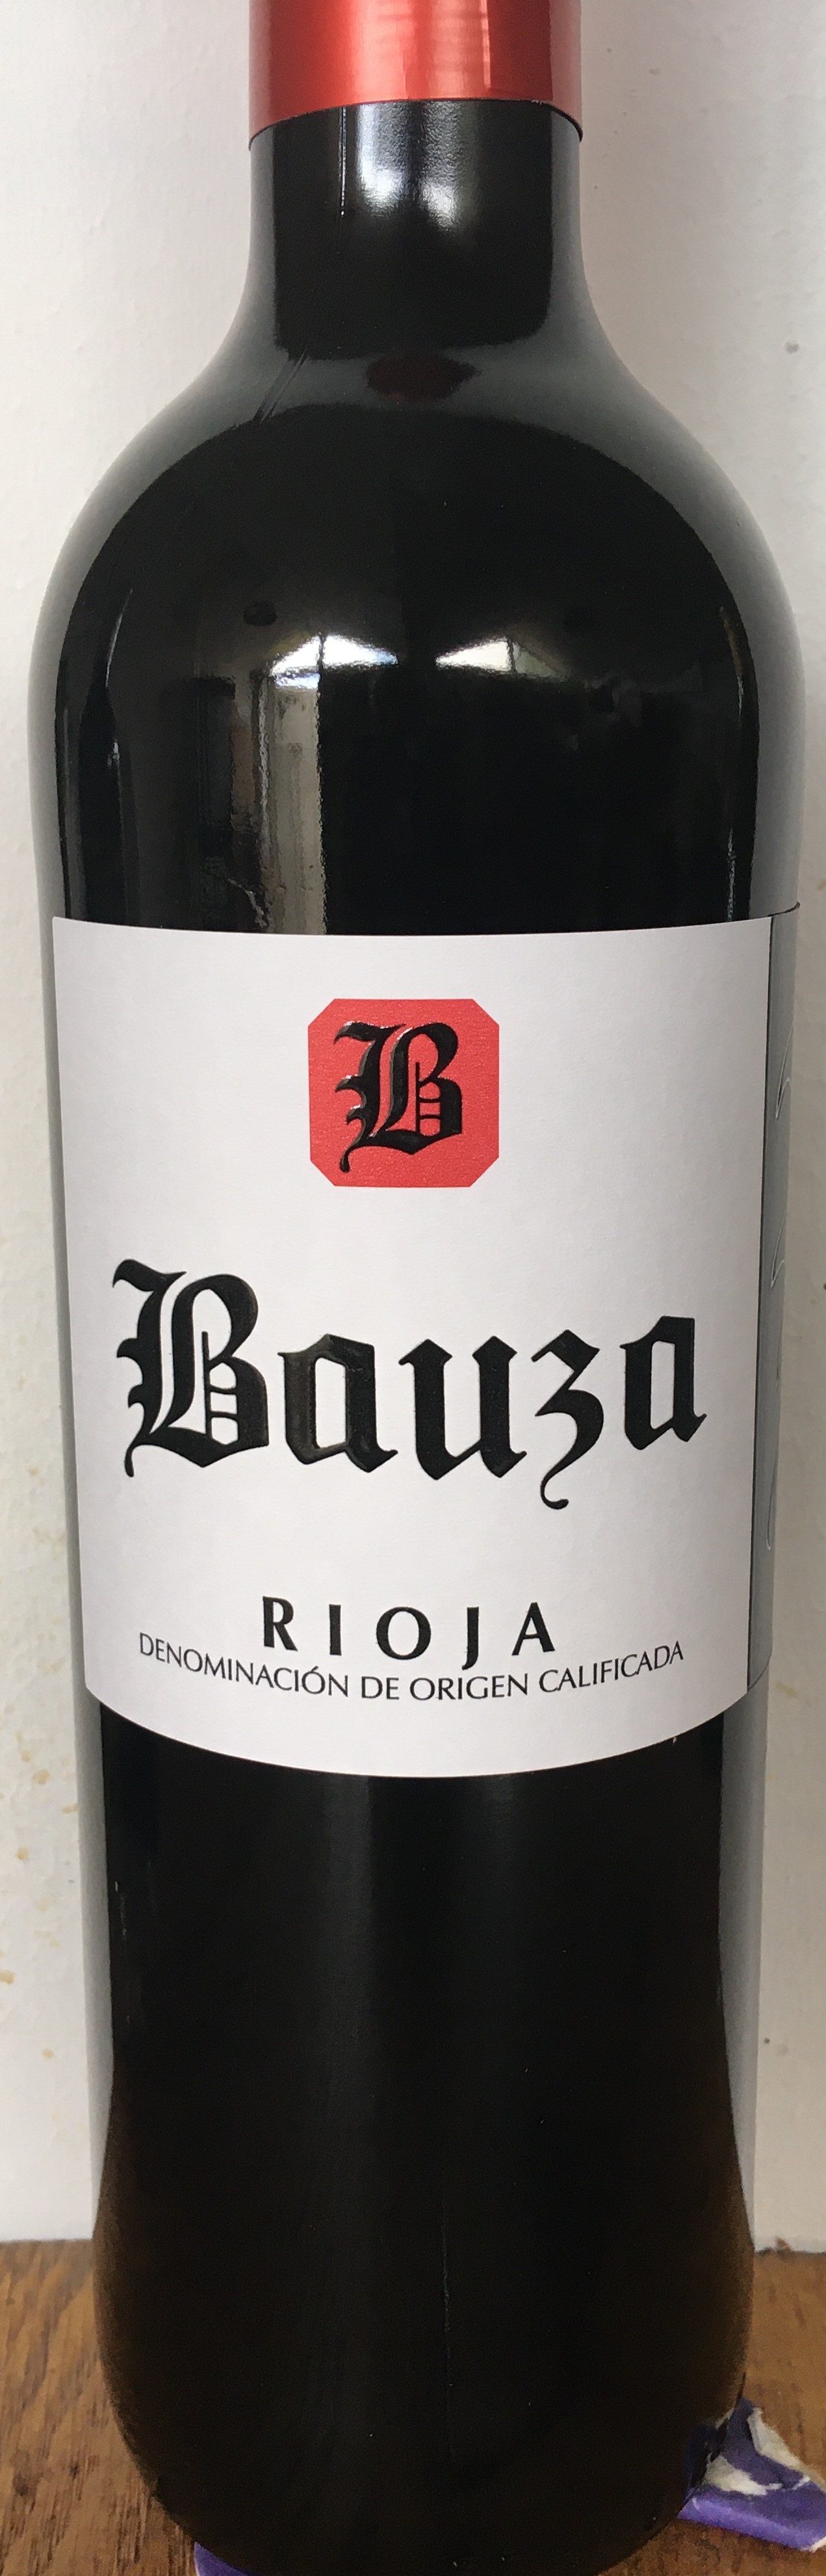 Bauza Tinto 2018 La Rioja